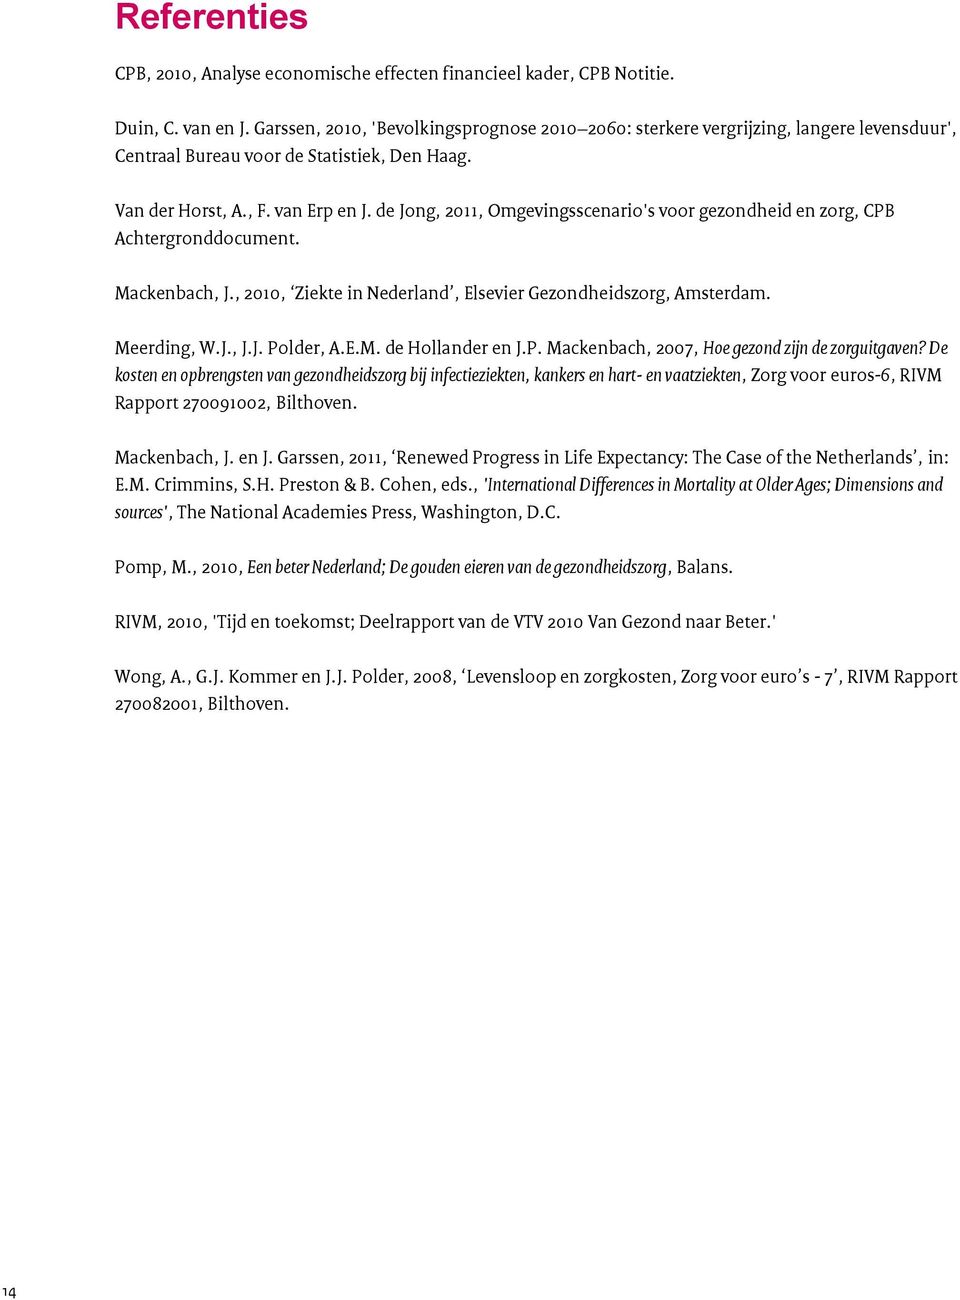 de Jong, 2011, Omgevingsscenario's voor gezondheid en zorg, CPB Achtergronddocument. Mackenbach, J., 2010, Ziekte in Nederland, Elsevier Gezondheidszorg, Amsterdam. Meerding, W.J., J.J. Polder, A.E.M. de Hollander en J.